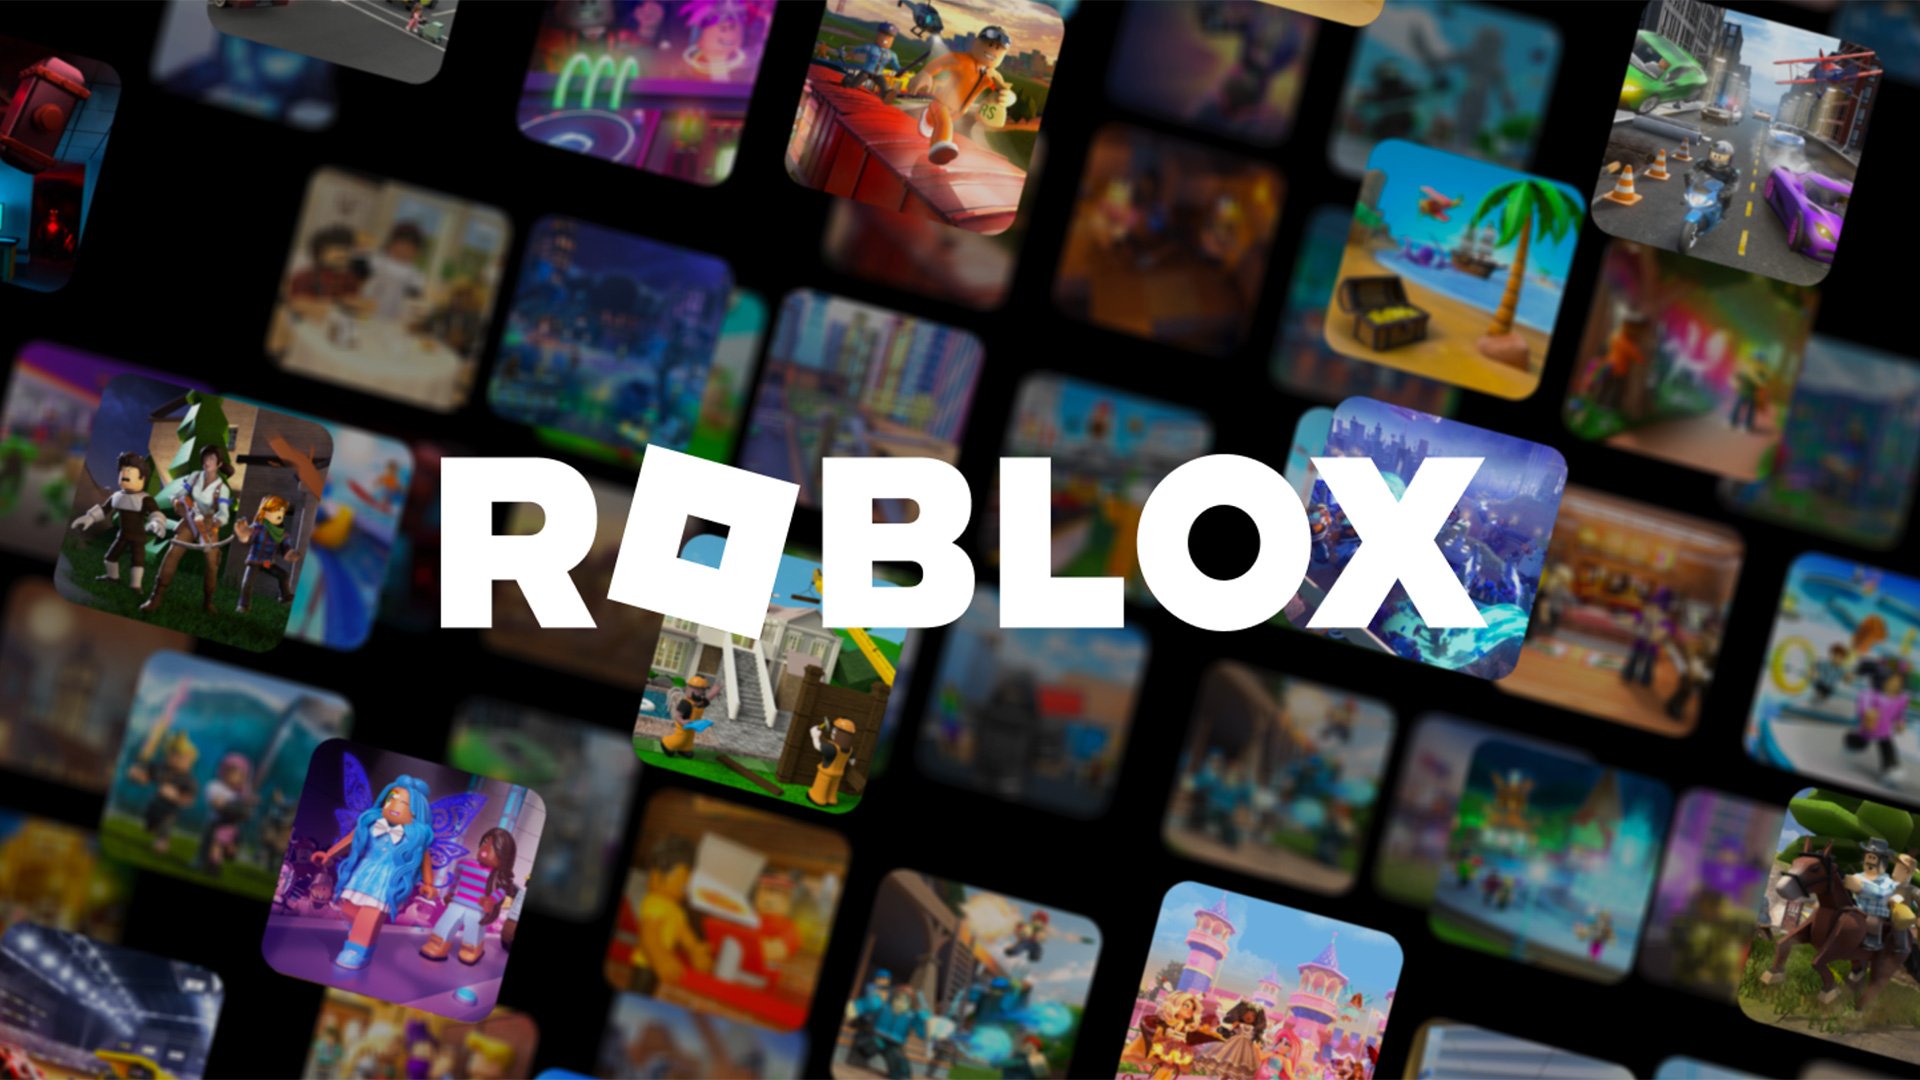 Melhor dos Games - Conta de roblox - Mobile, Xbox One, PC, PlayStation 4